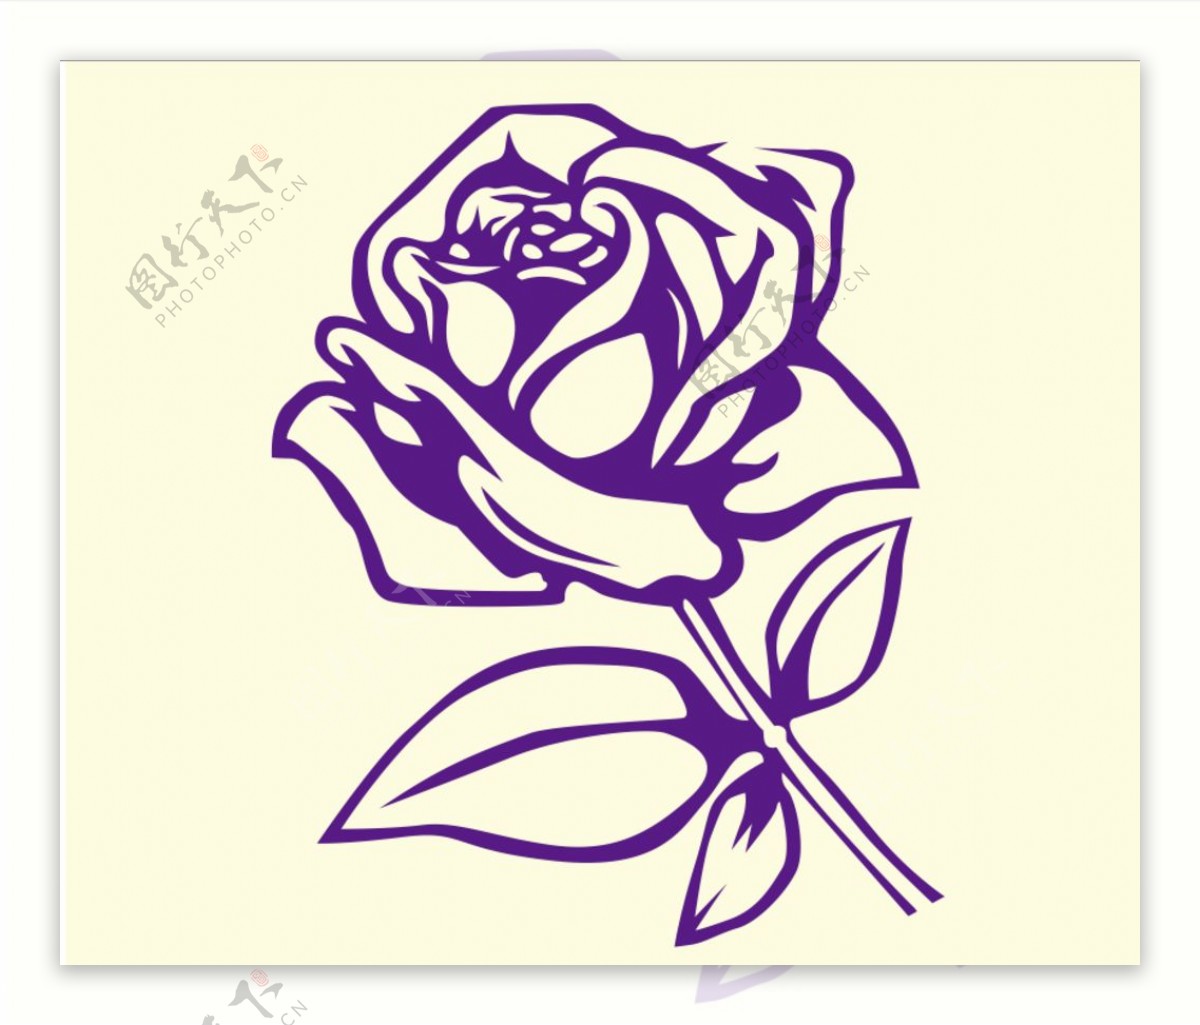 紫色玫瑰图片